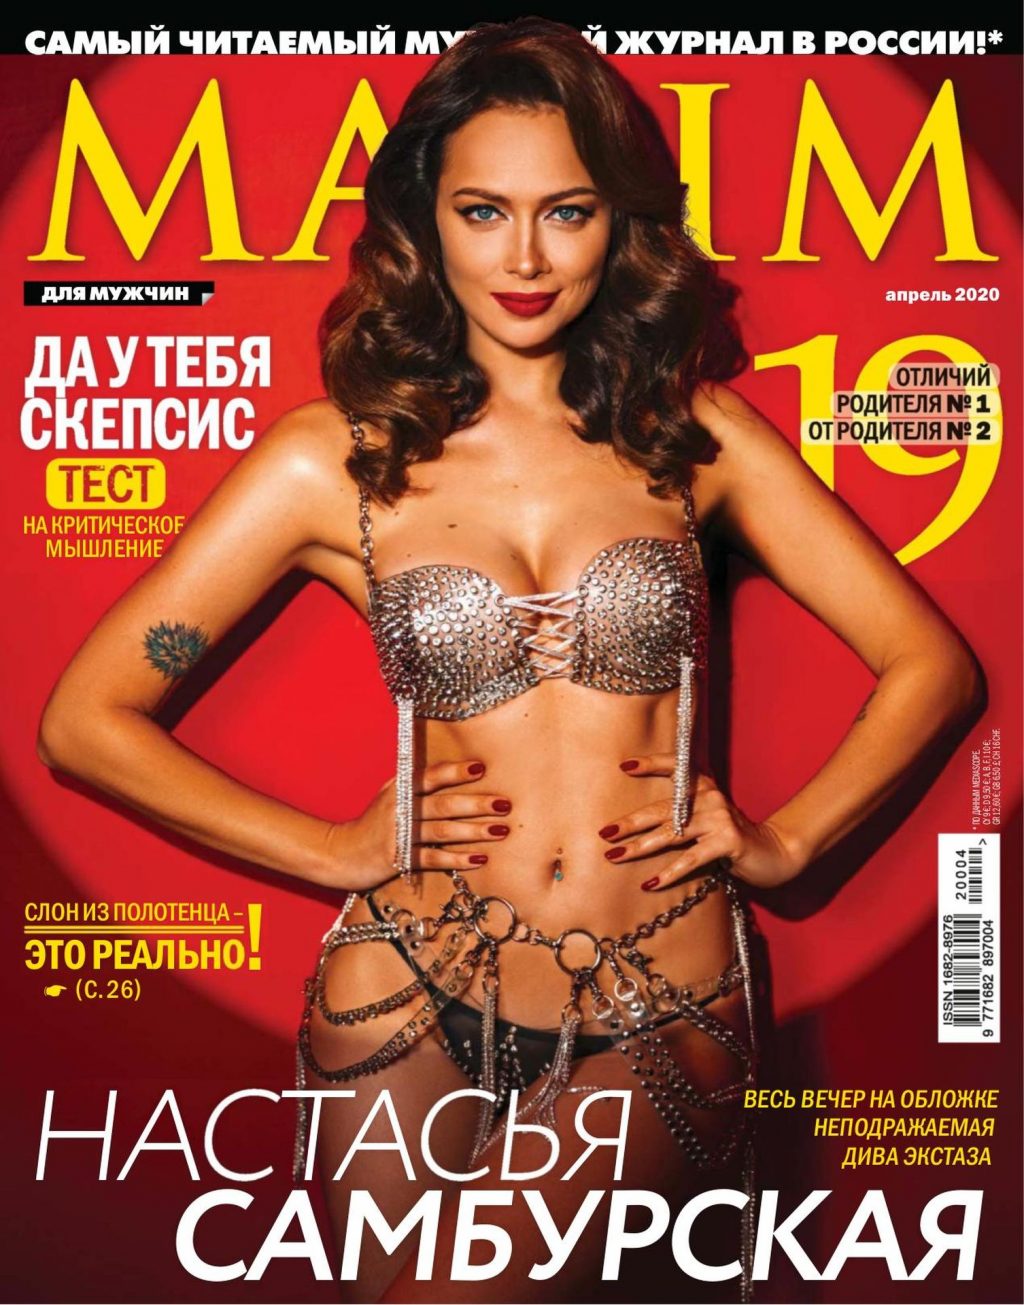 Nastasya Samburskaya Poses for Maxim Magazine (7 Photos)